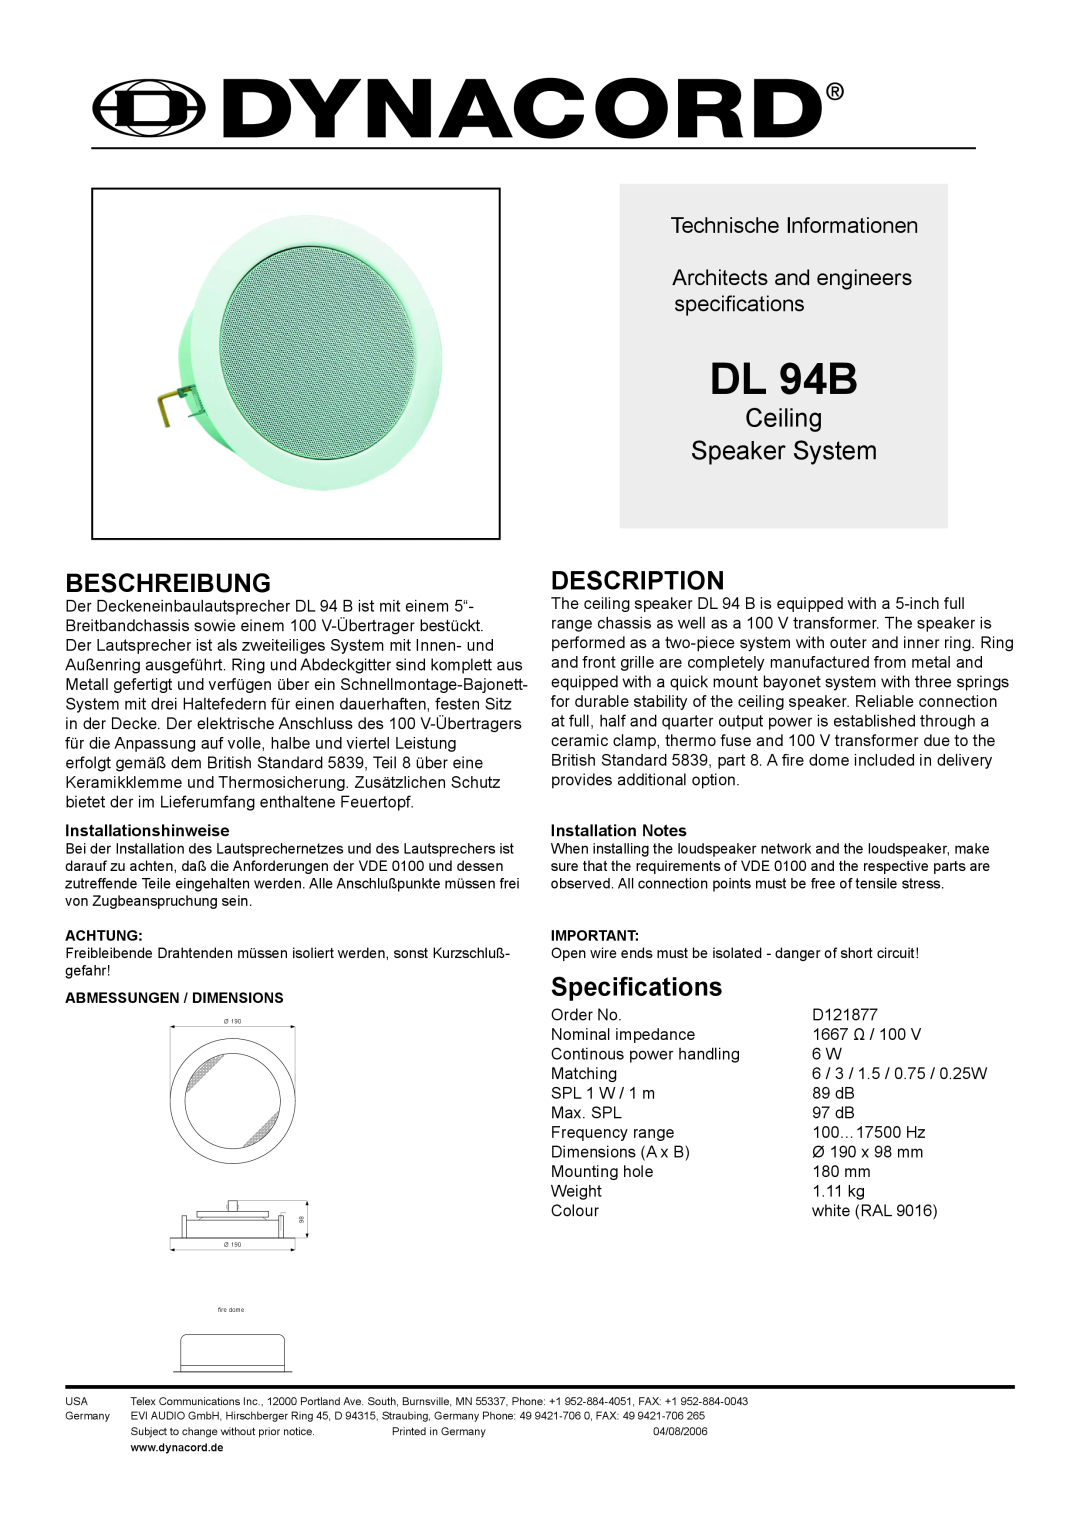 Dynacord DL 94B dimensions Beschreibung, Ceiling Speaker System, Description, Specifications, Technische Informationen 